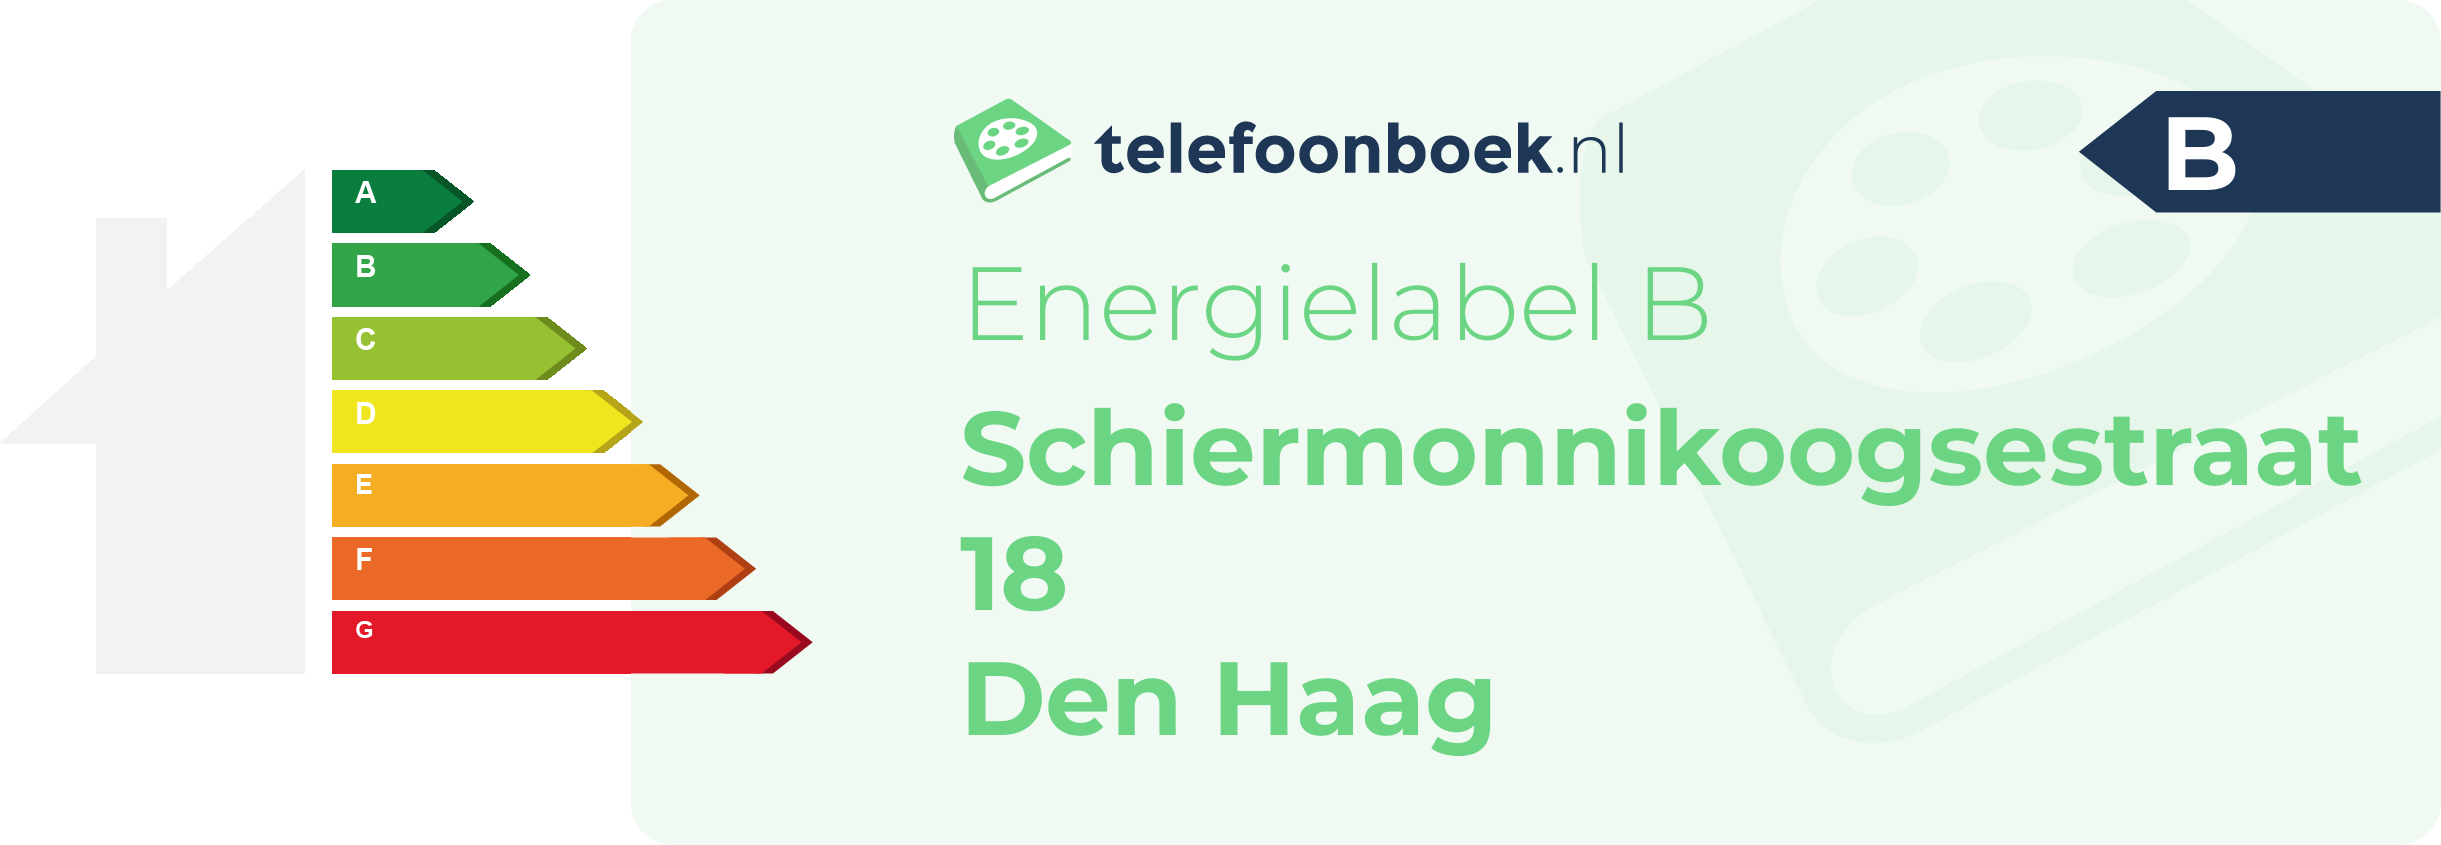 Energielabel Schiermonnikoogsestraat 18 Den Haag